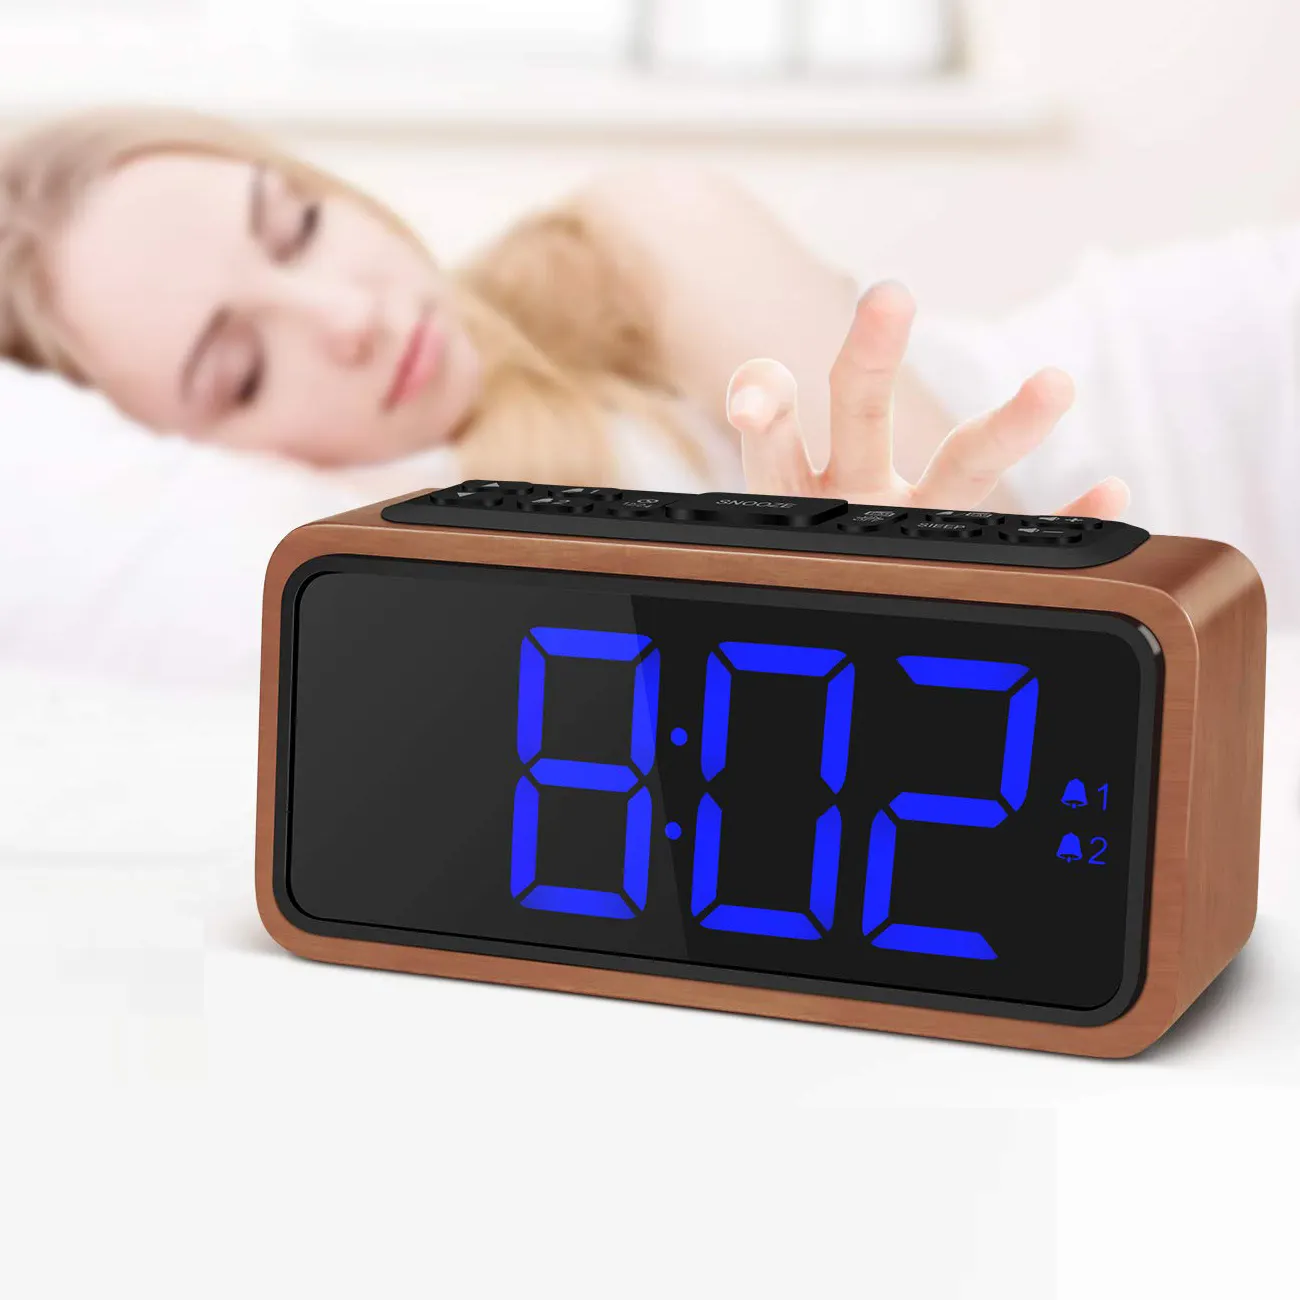 Double Alarme Snooze Grand Écran LED 12hr 24hr Format FM Radio Réveil Numérique pour Chambre